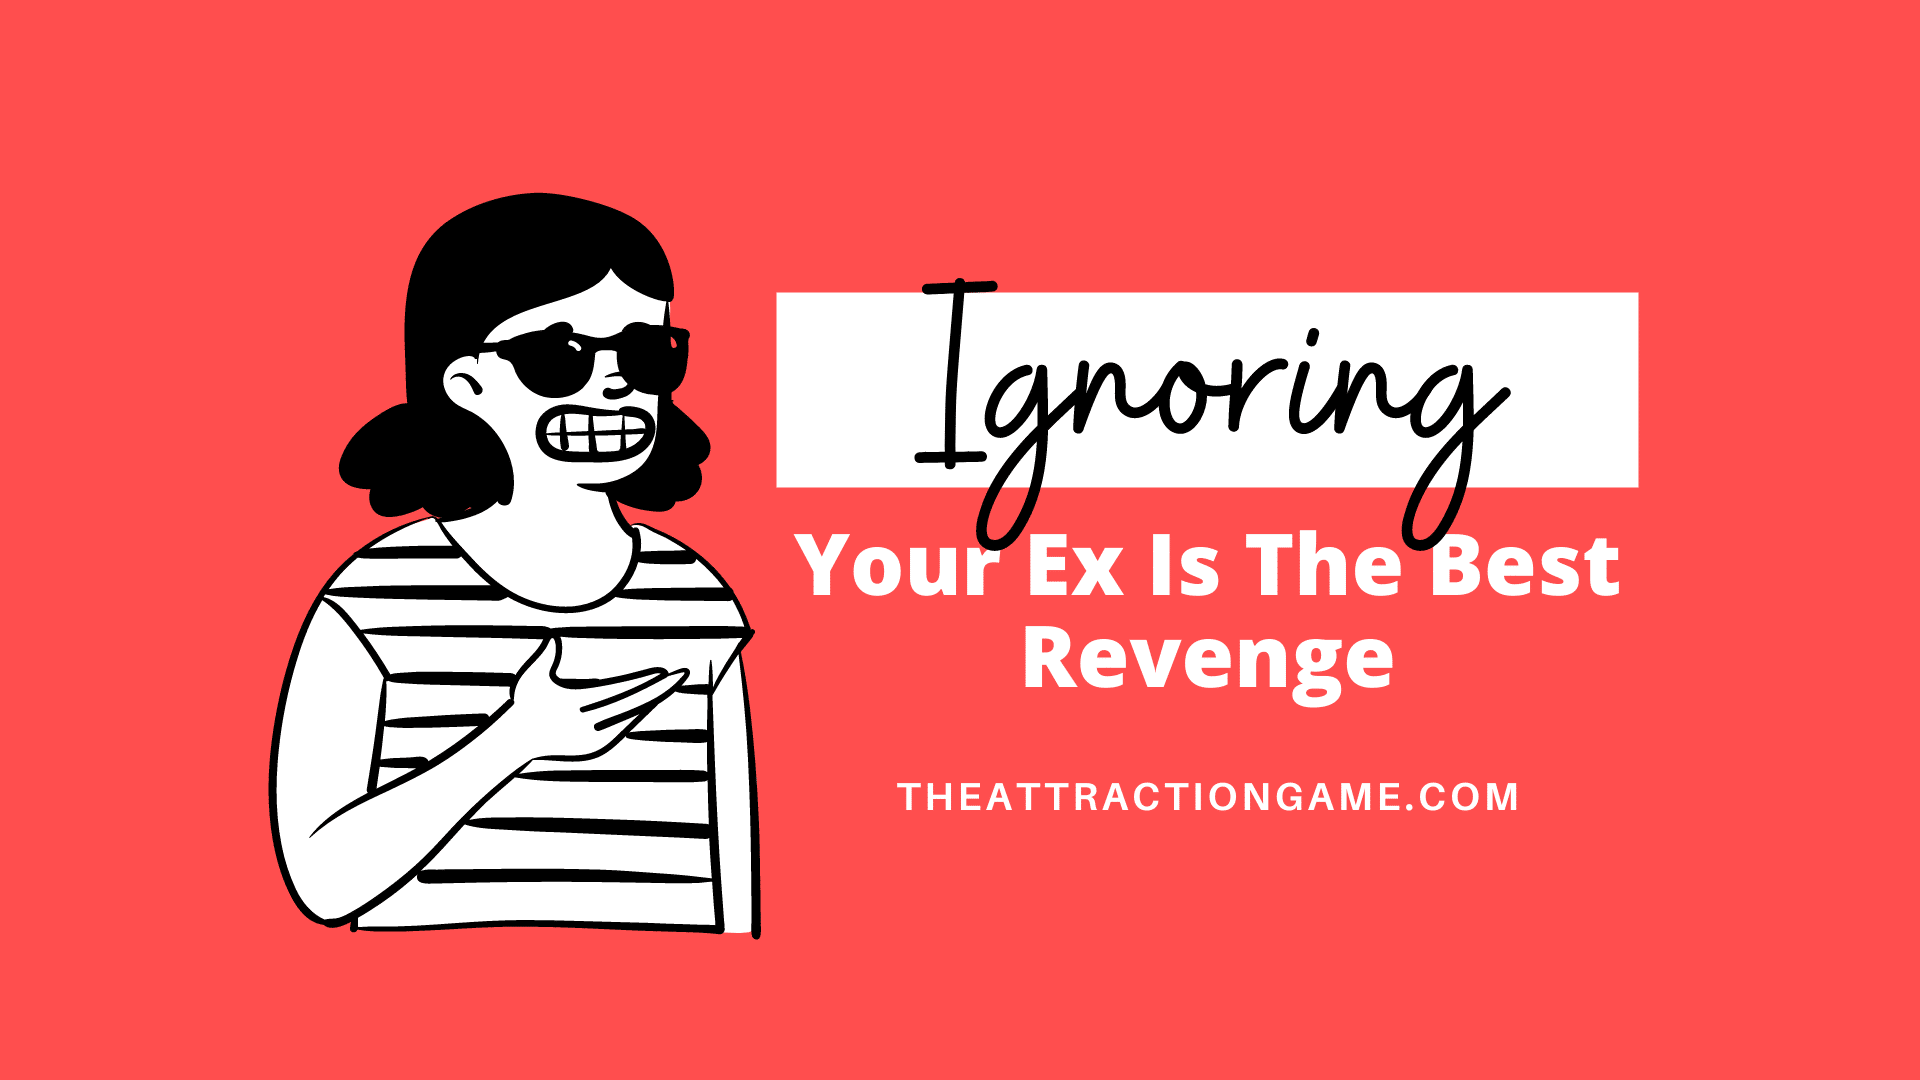 Ex revenge photos